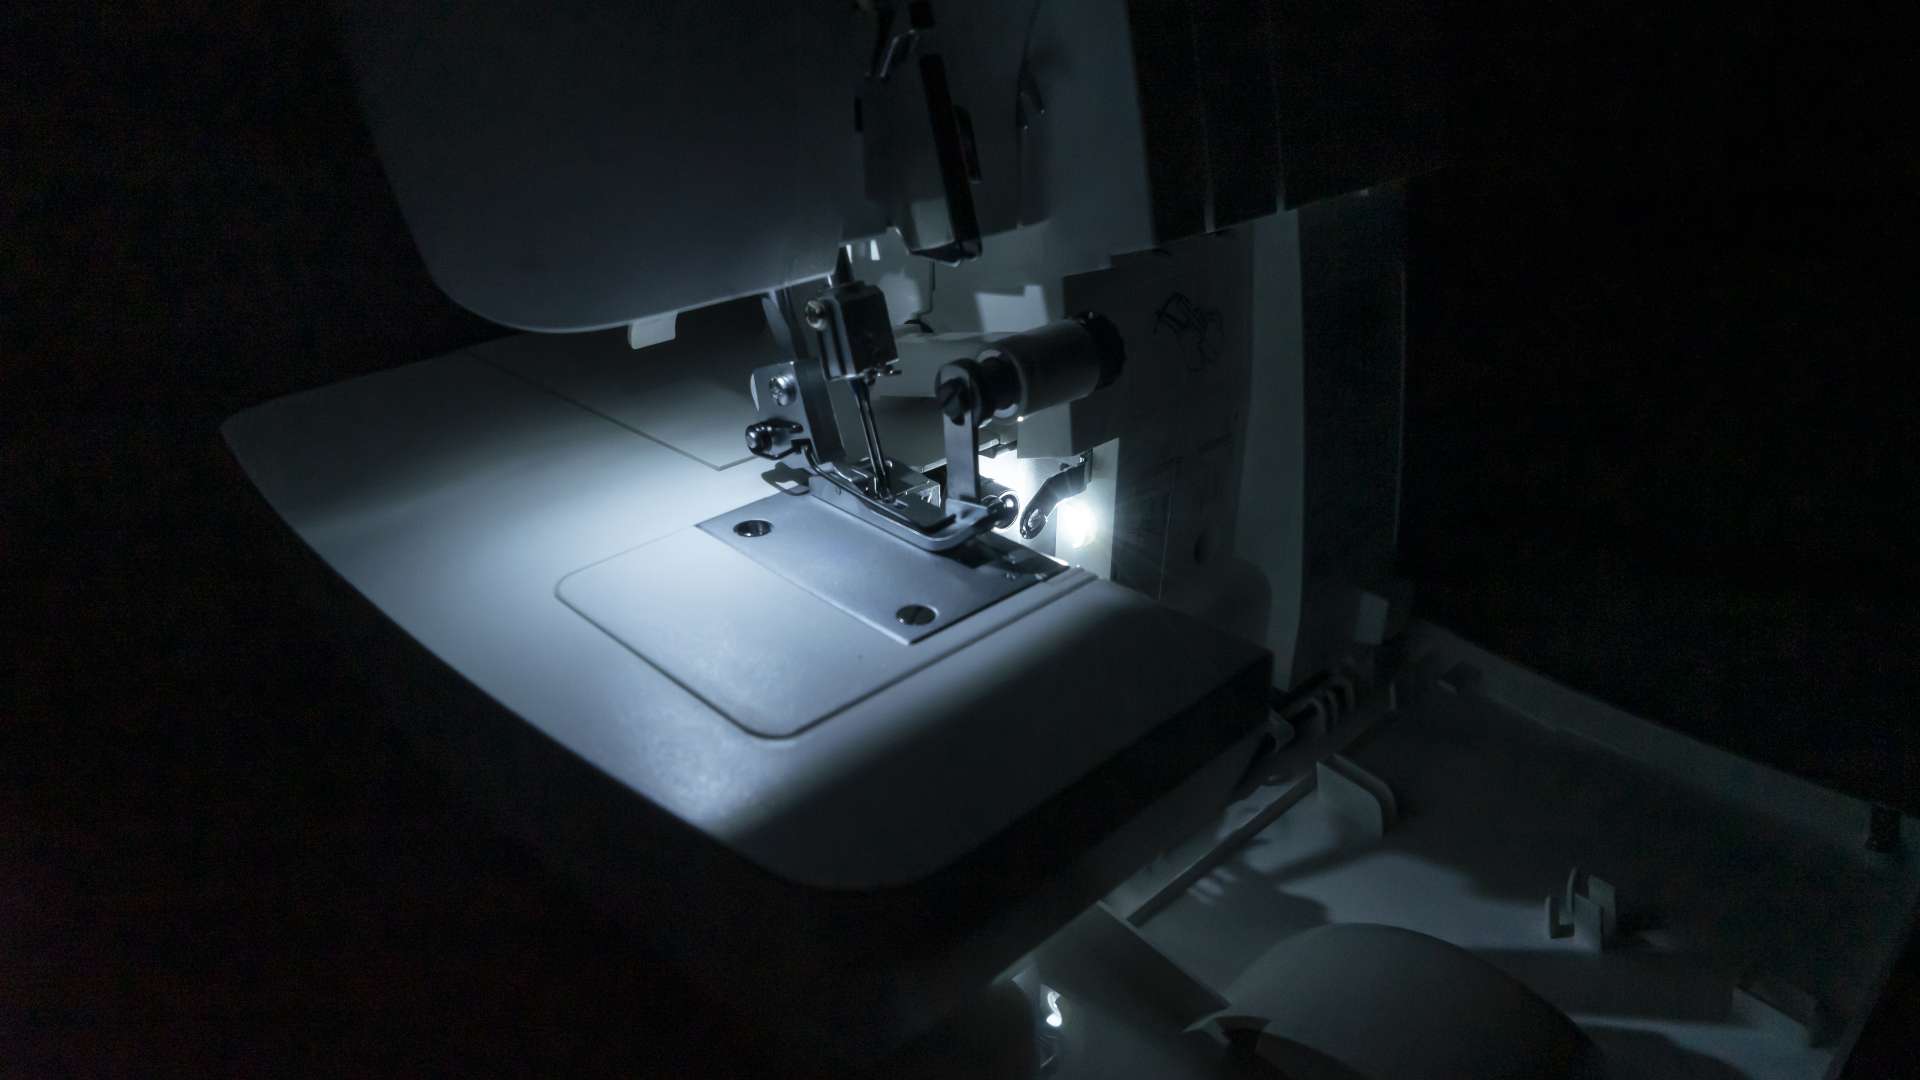 Máquina Remalladora SINGER S0105L - Maquinas de coser Ladys